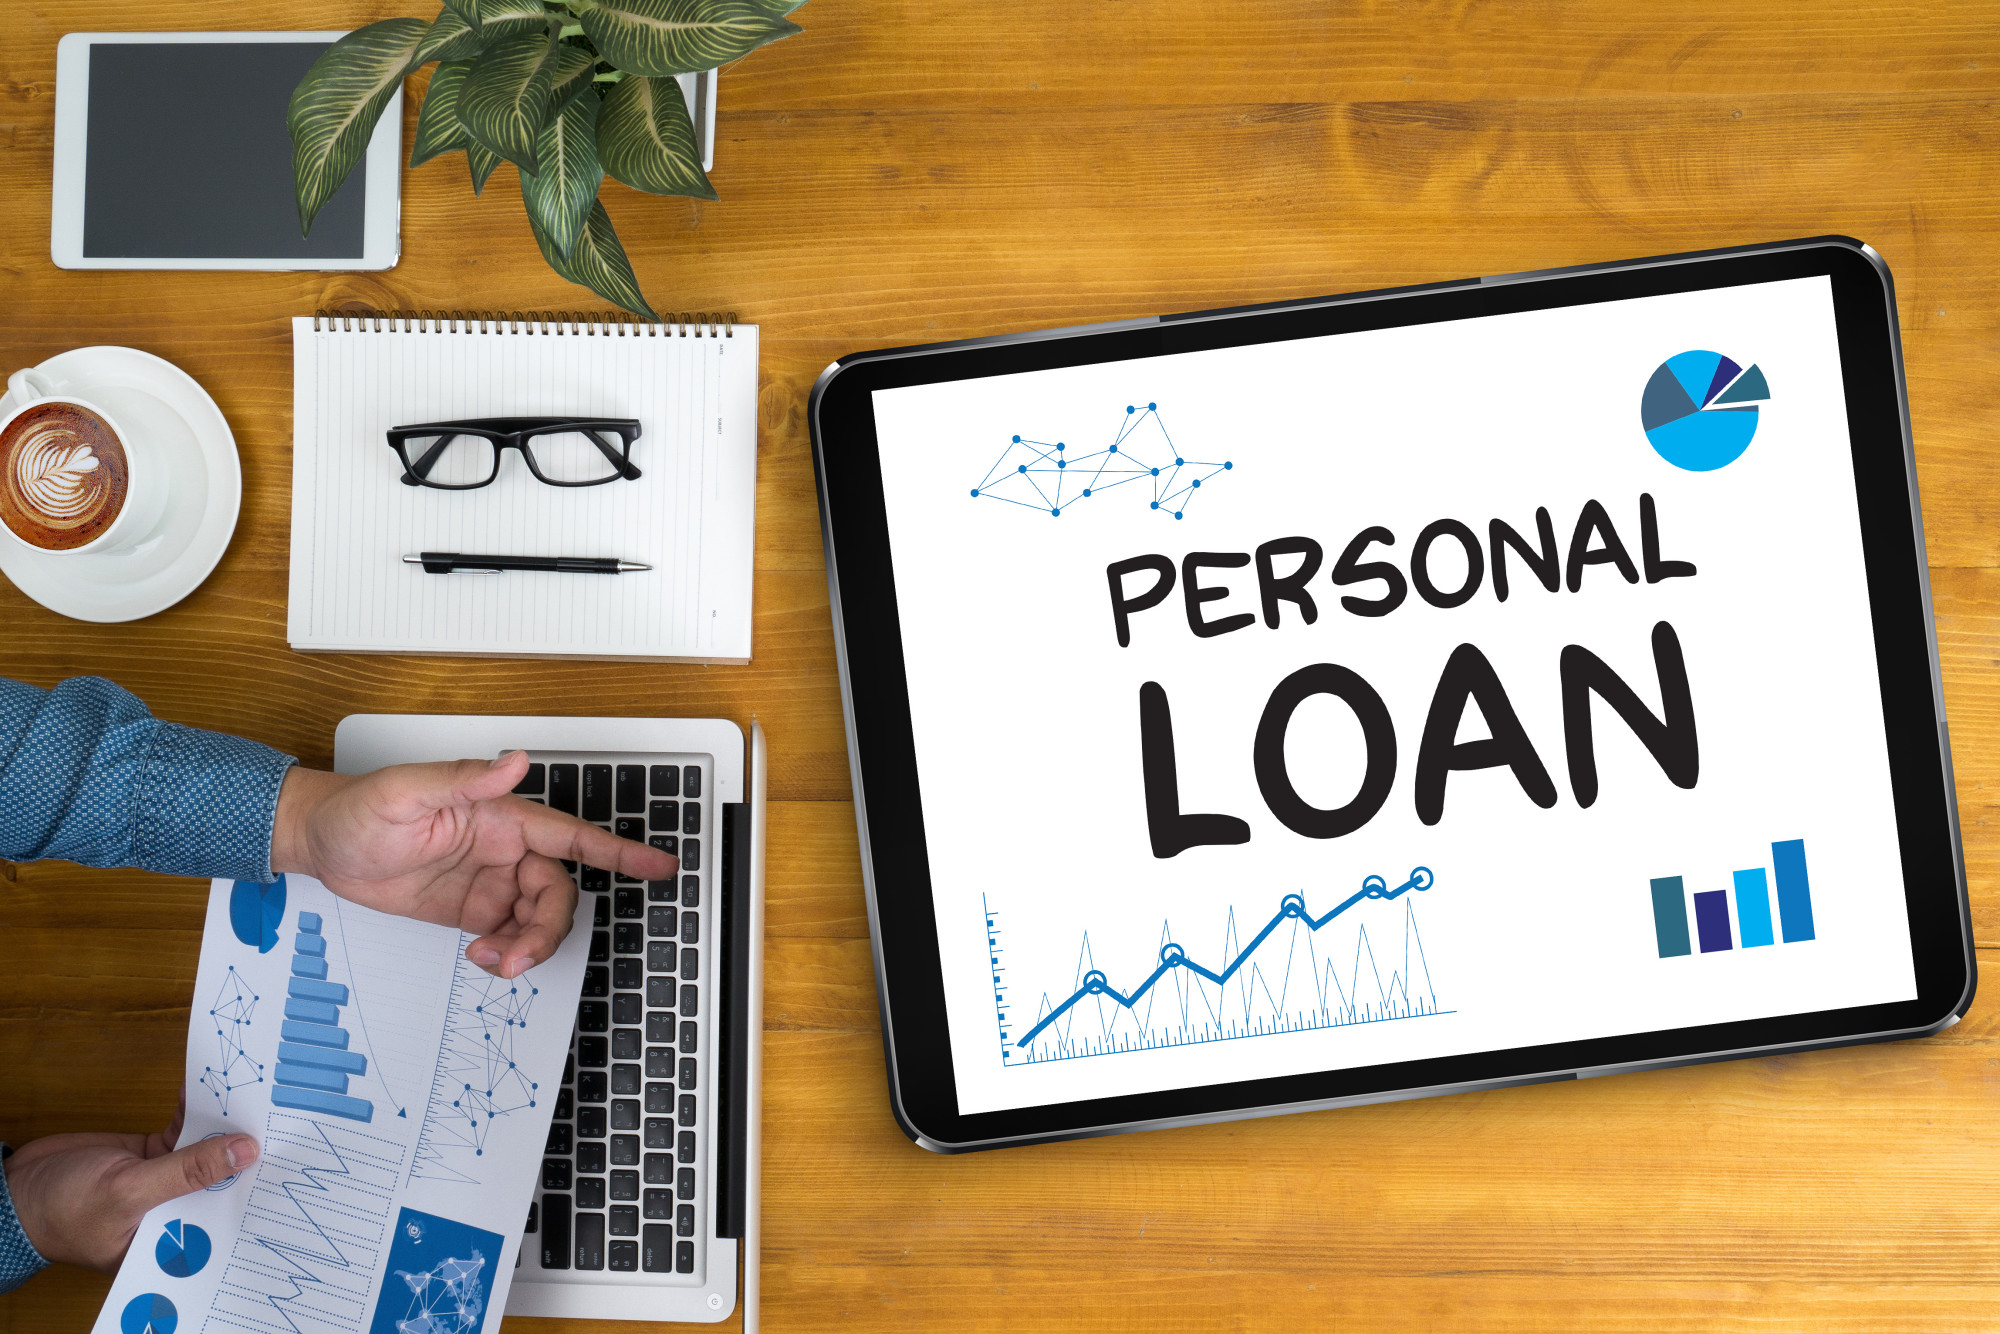 Online Personal Loan